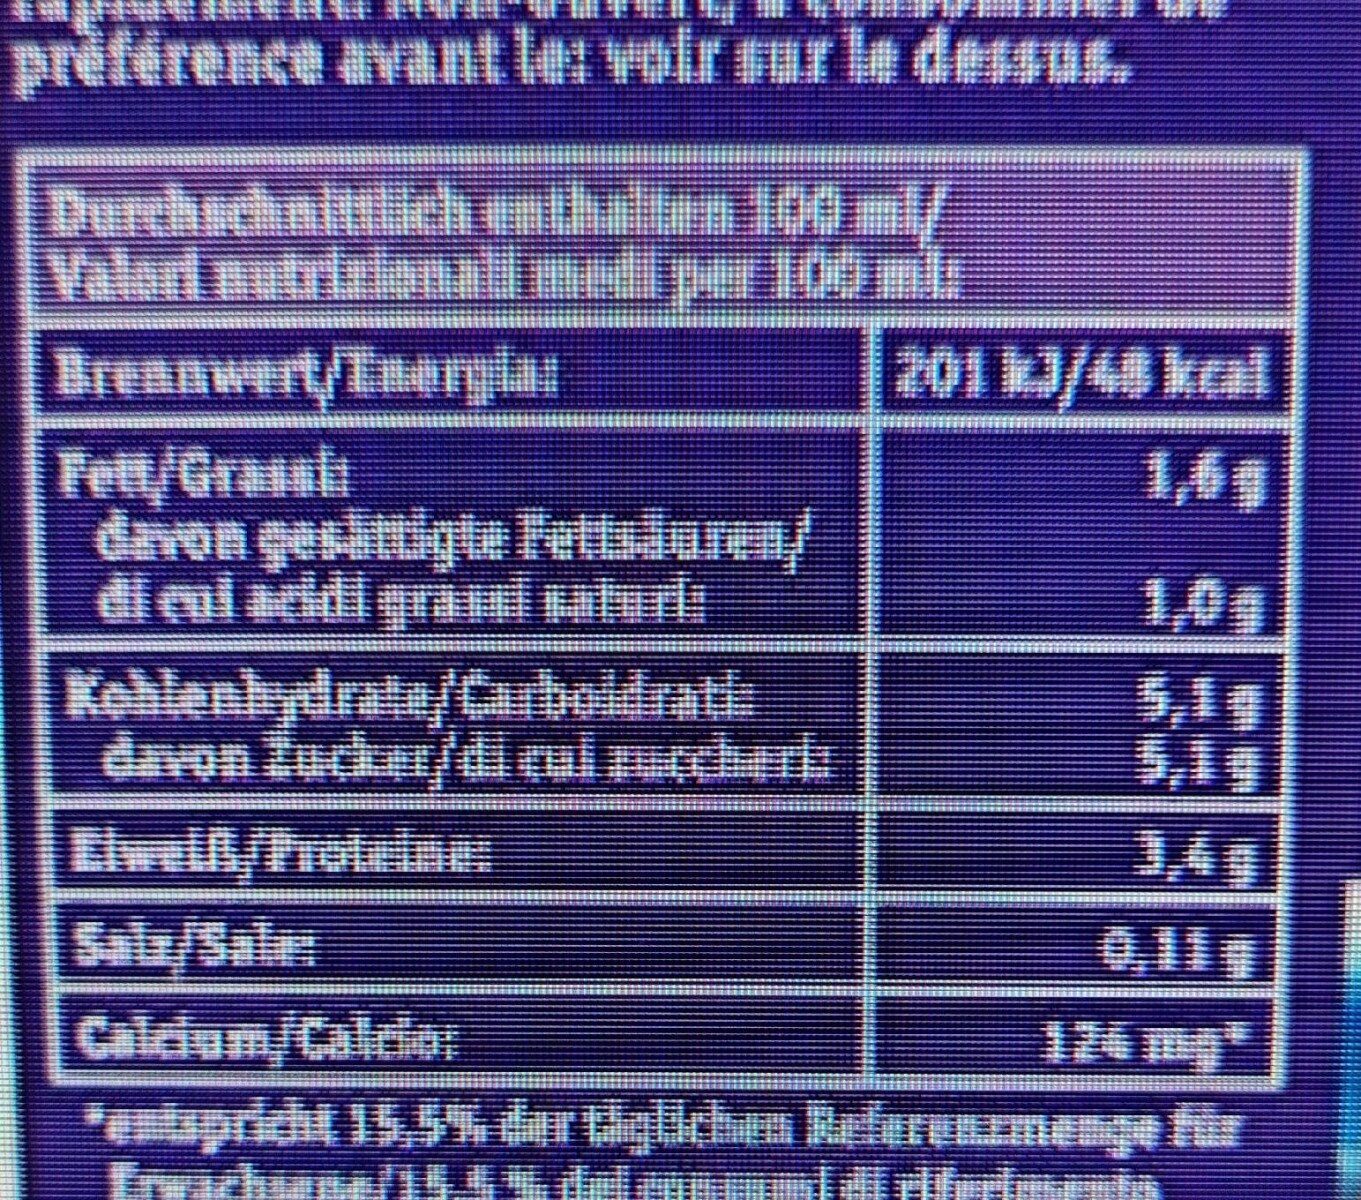 M-Haltbare Bio-Alpenmilch 1,5 % - Nährwertangaben